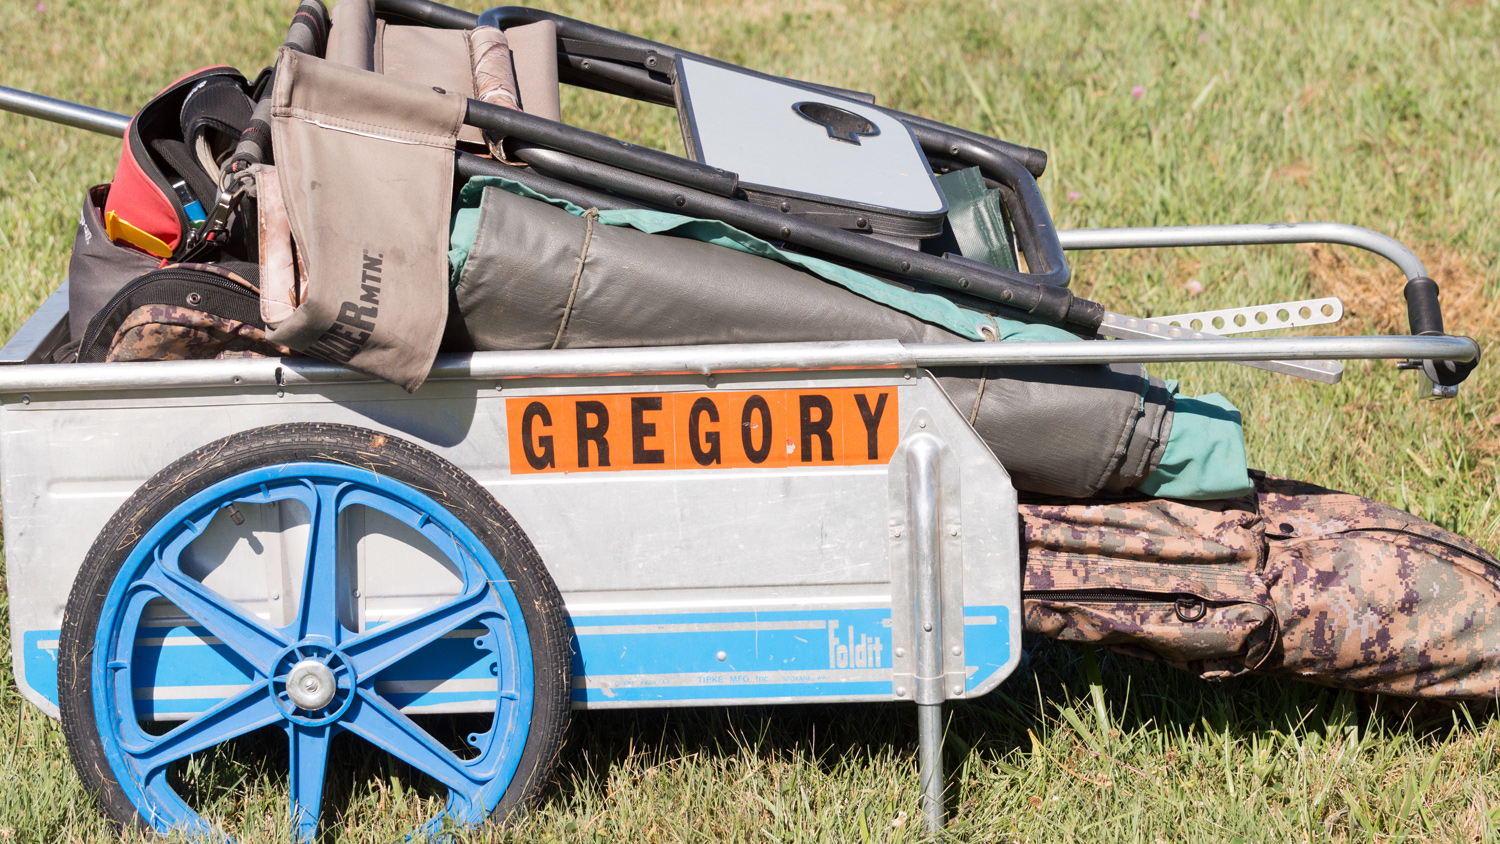 Gregory&#x27;s range cart